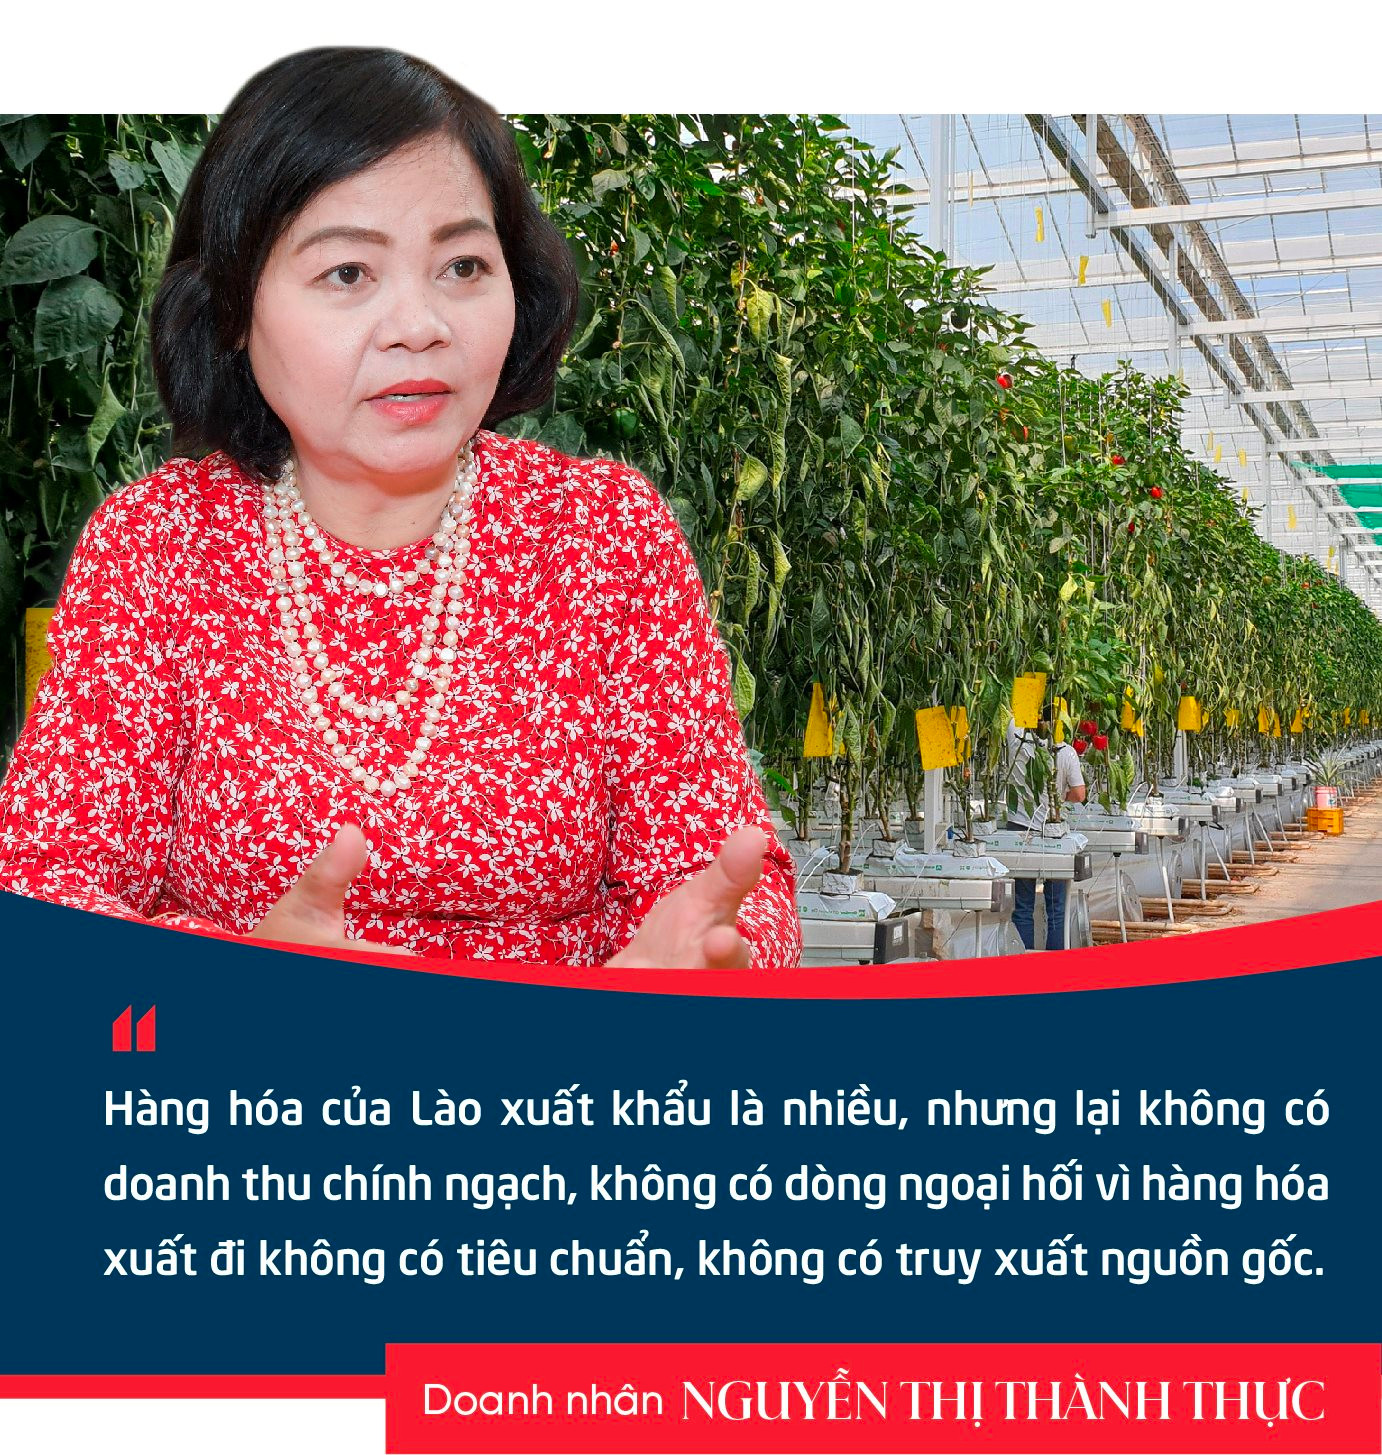 Doanh nhân Nguyễn Thị Thành Thực: Người Hàn Quốc sang Việt Nam làm chủ lĩnh vực công nghiệp, thì người Việt Nam cũng có thể làm chủ trong nông nghiệp ở Hàn Quốc- Ảnh 4.